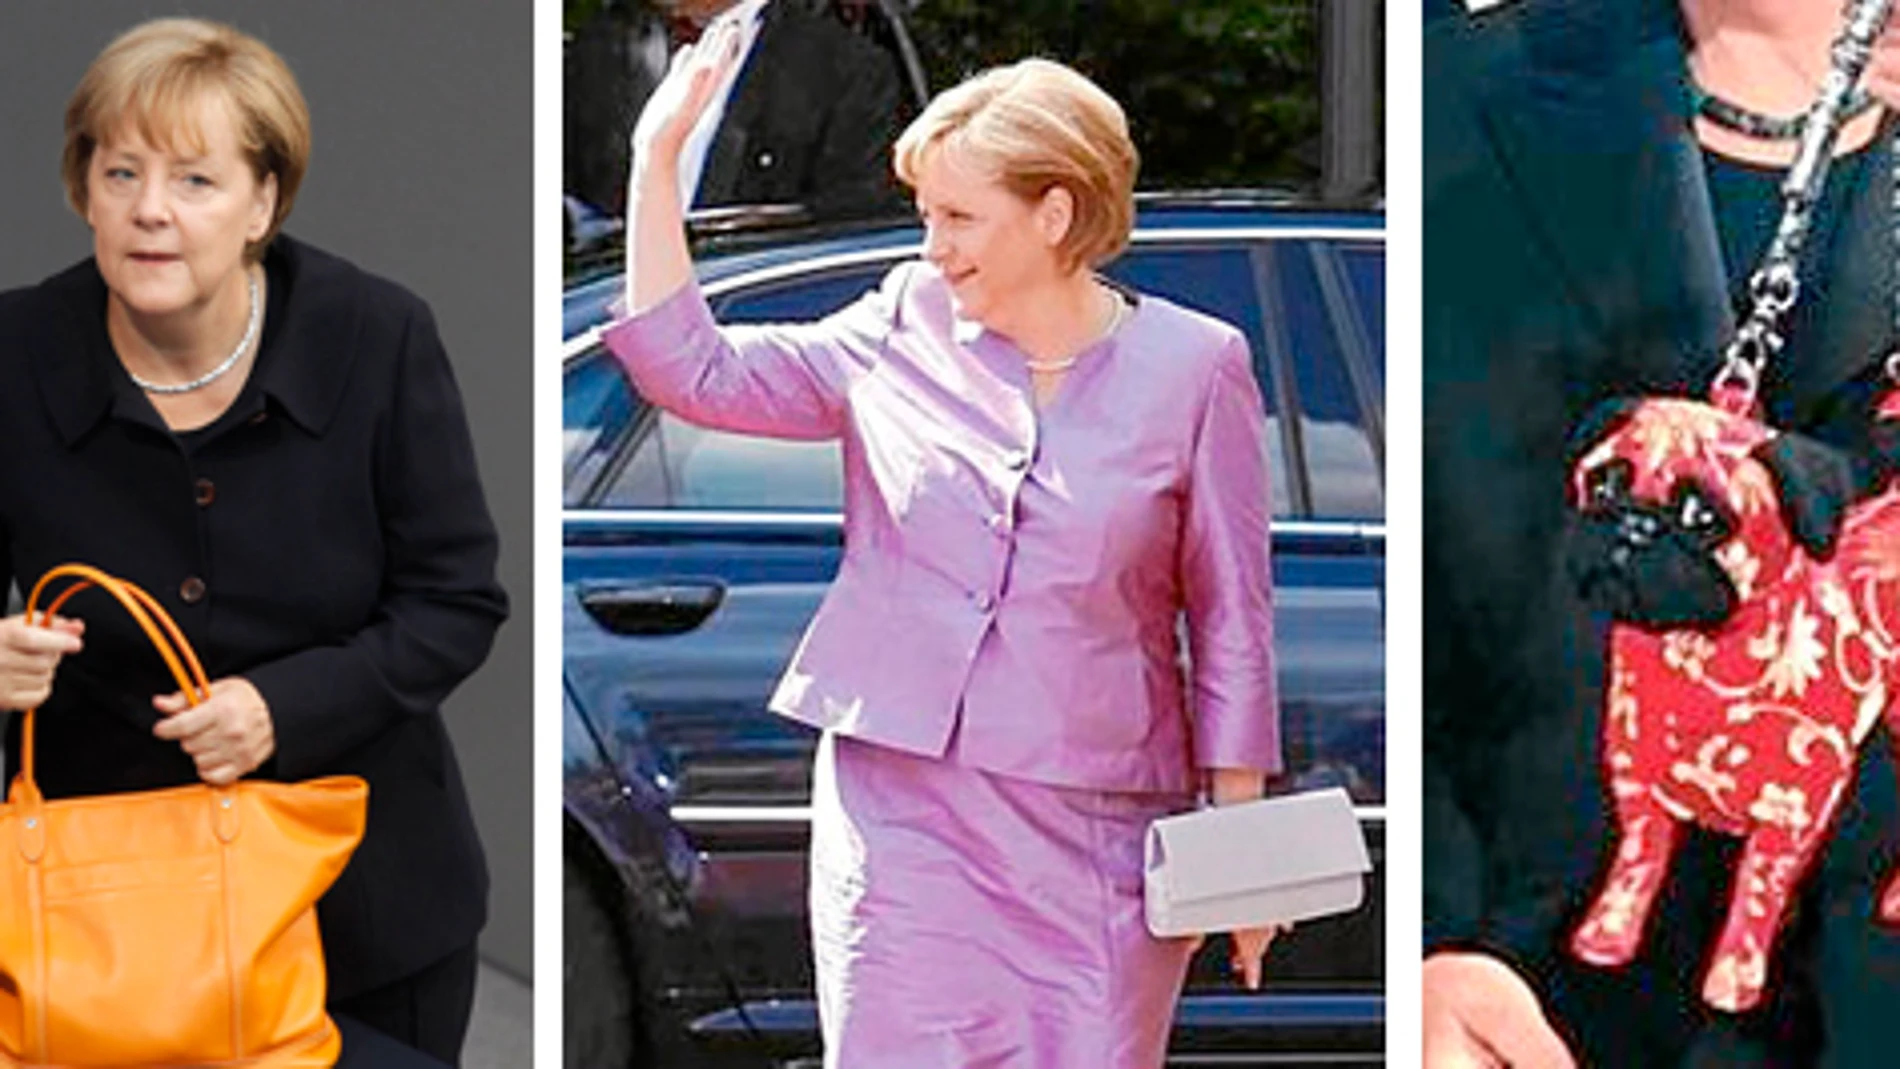 con las manos en la moda. Merkel, sobria en su vestimenta, suele arriesgar con modelos de bolso poco frecuentes.